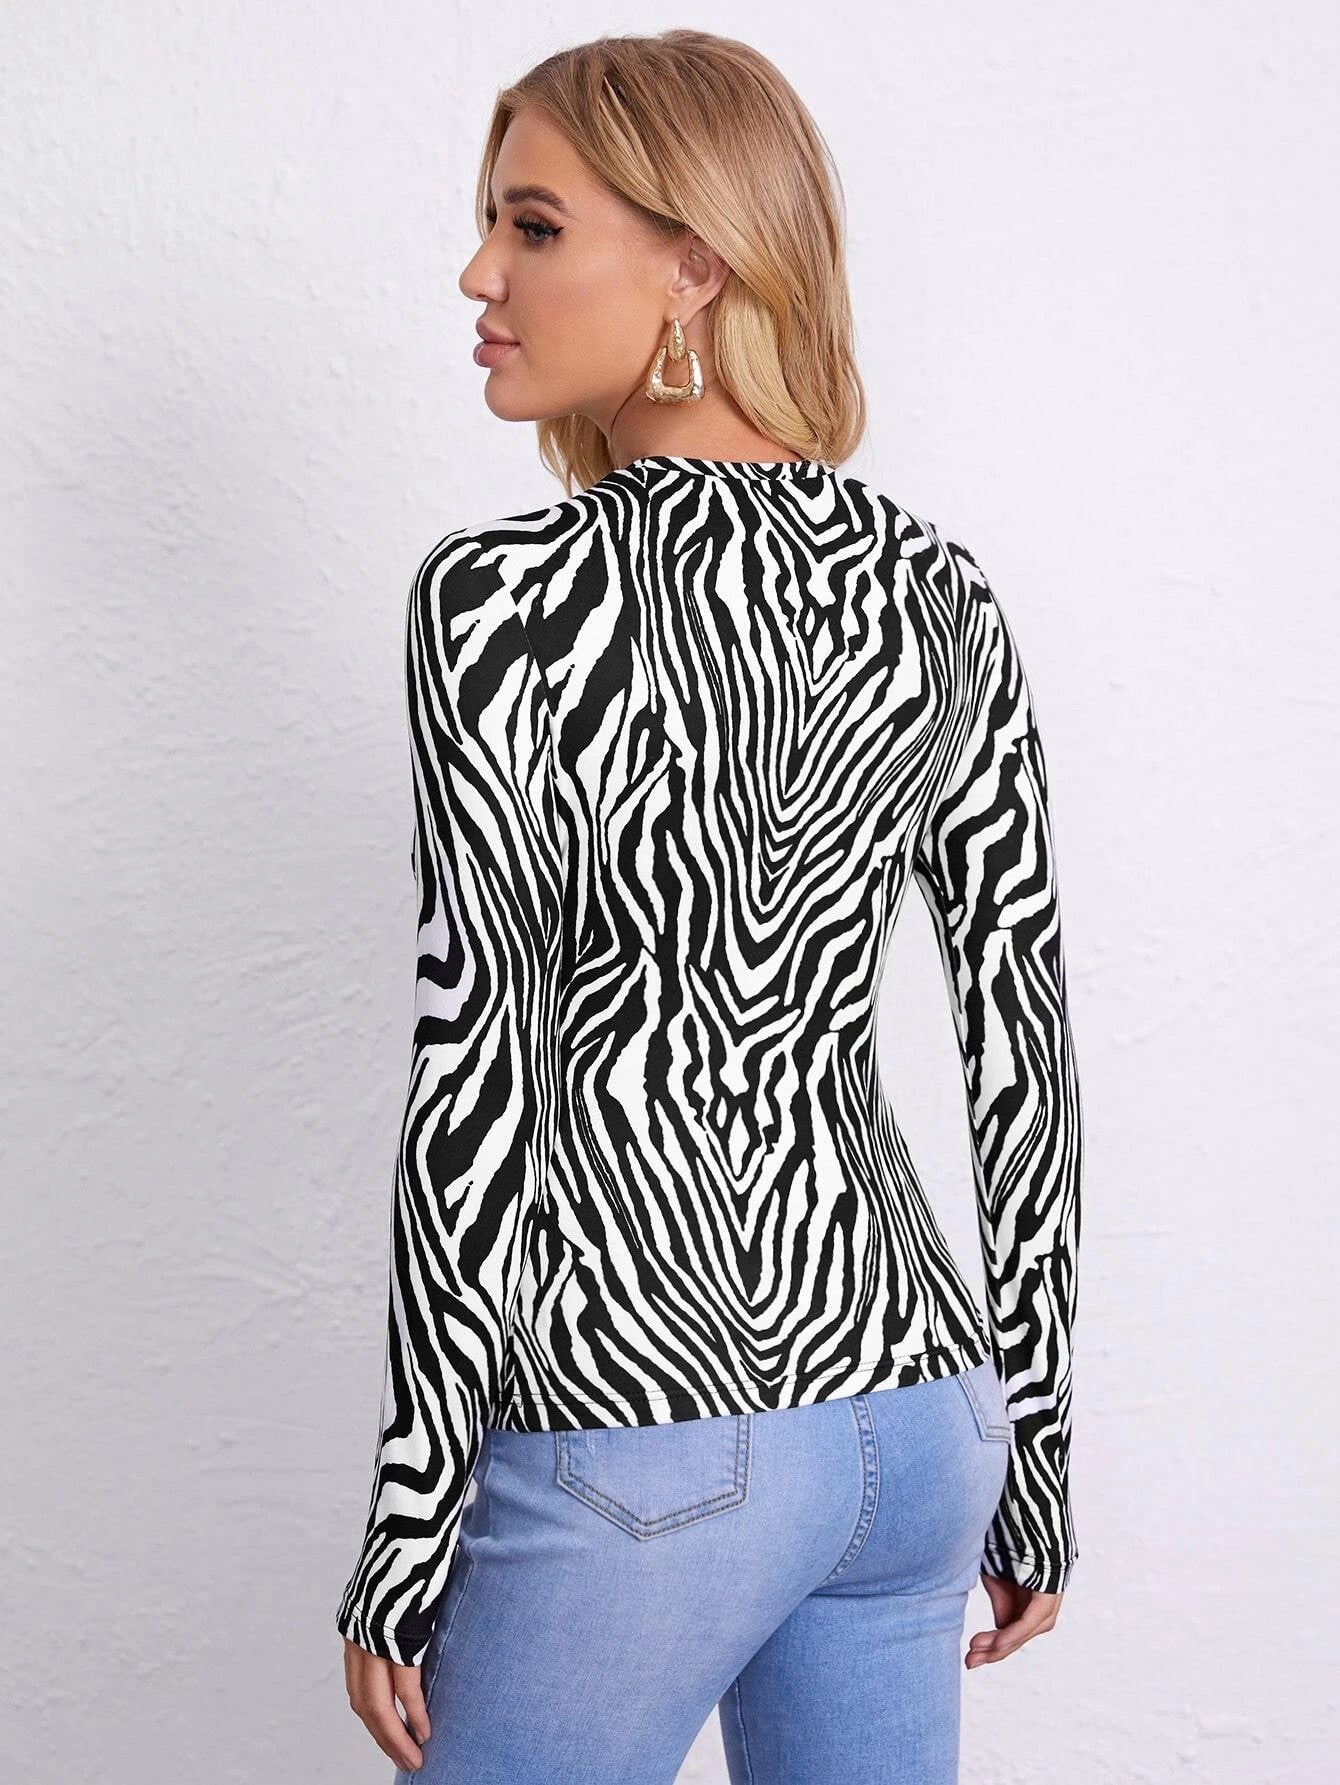 Zebra Striped Top